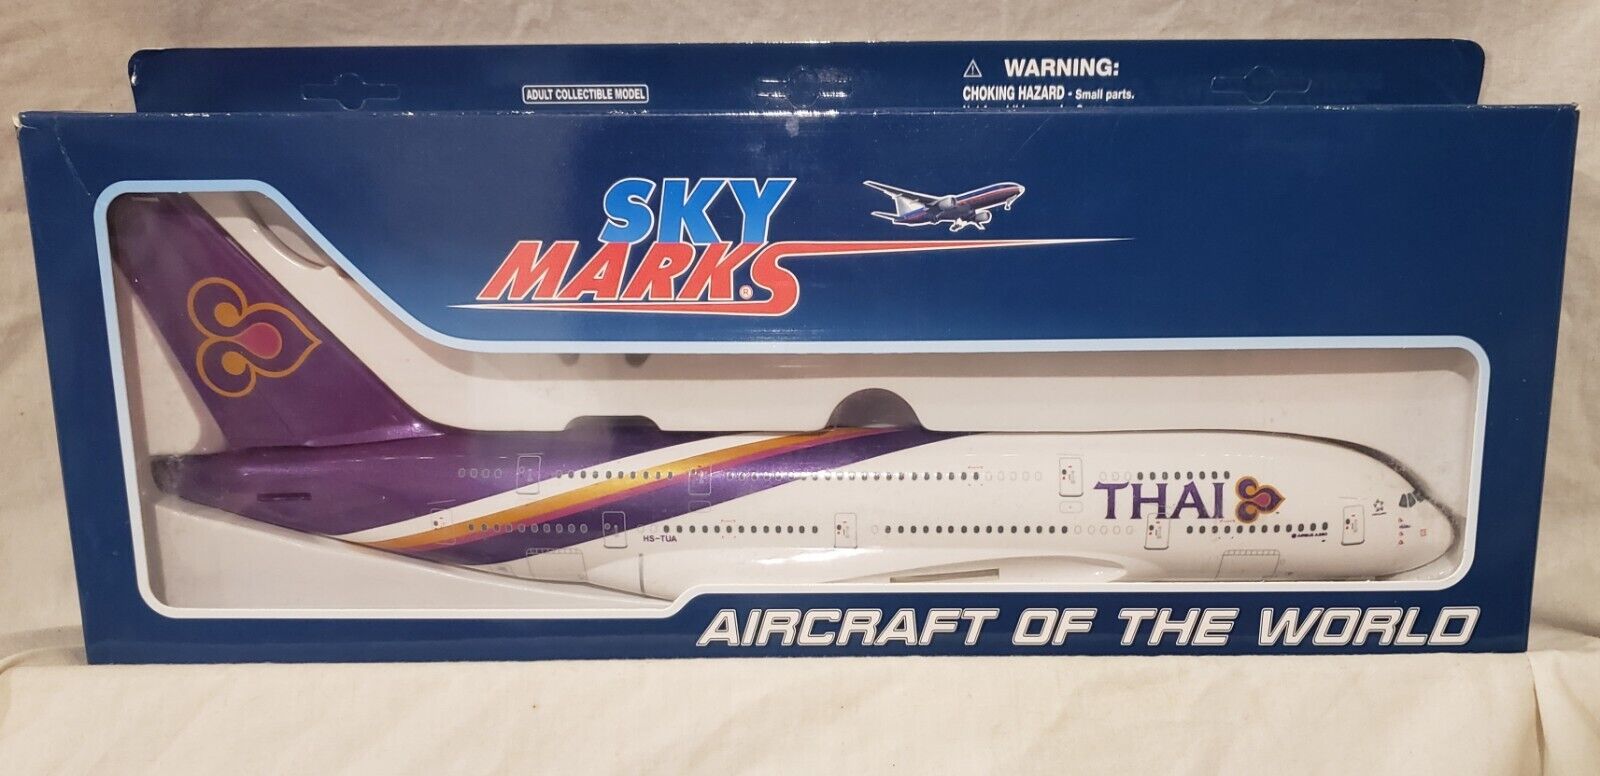 Skymarks Thai Airways Airbus A380-800 Display Model 1/200 